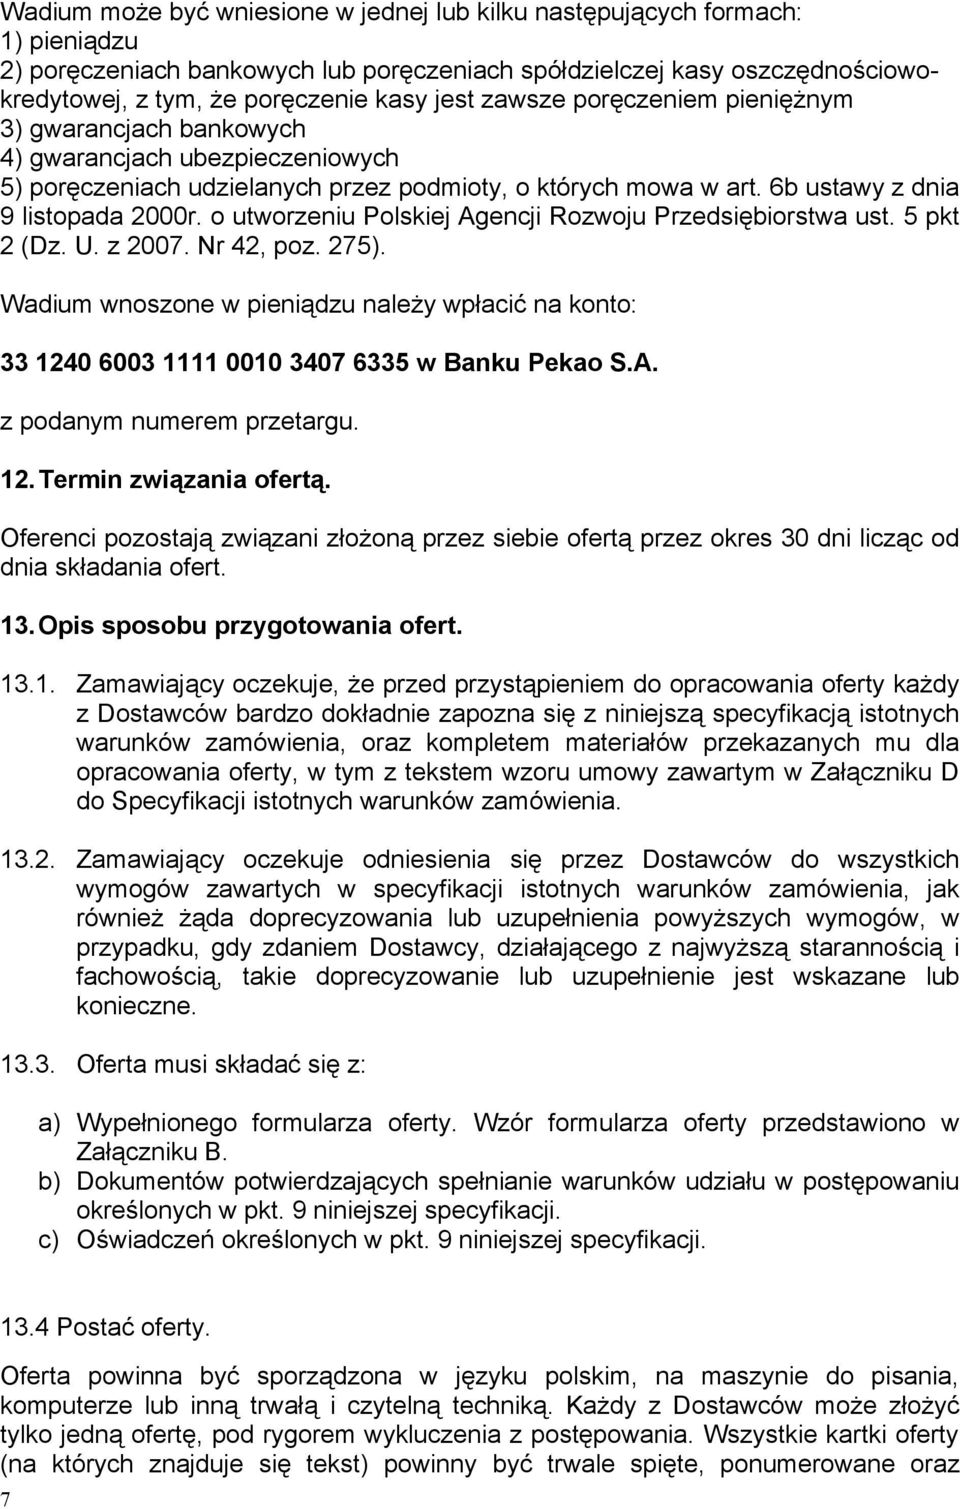 o utworzeniu Polskiej Agencji Rozwoju Przedsiębiorstwa ust. 5 pkt 2 (Dz. U. z 2007. Nr 42, poz. 275).